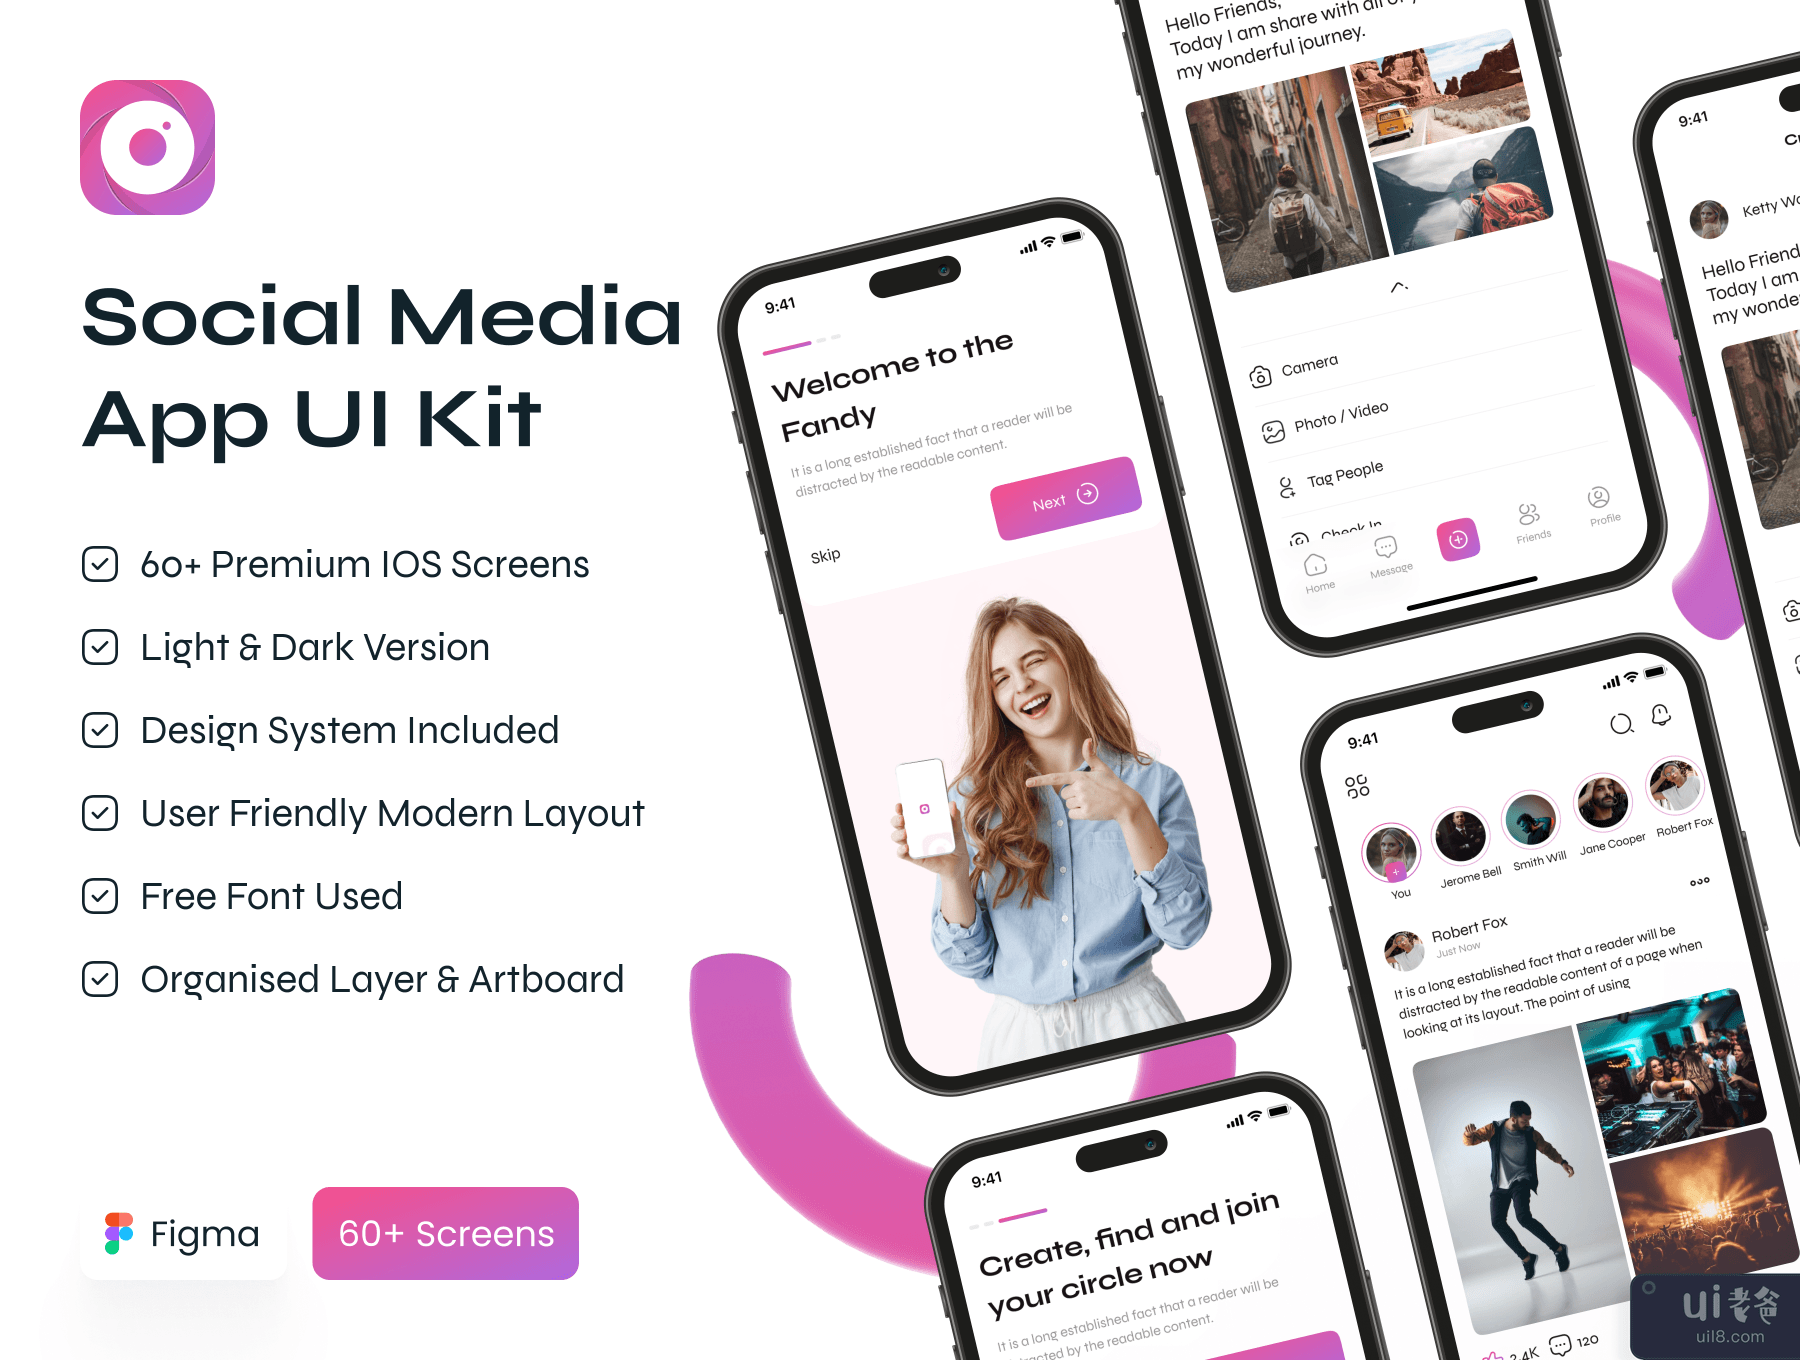 社交媒体应用程序 UI 工具包 (Social Media App UI Kit)插图7